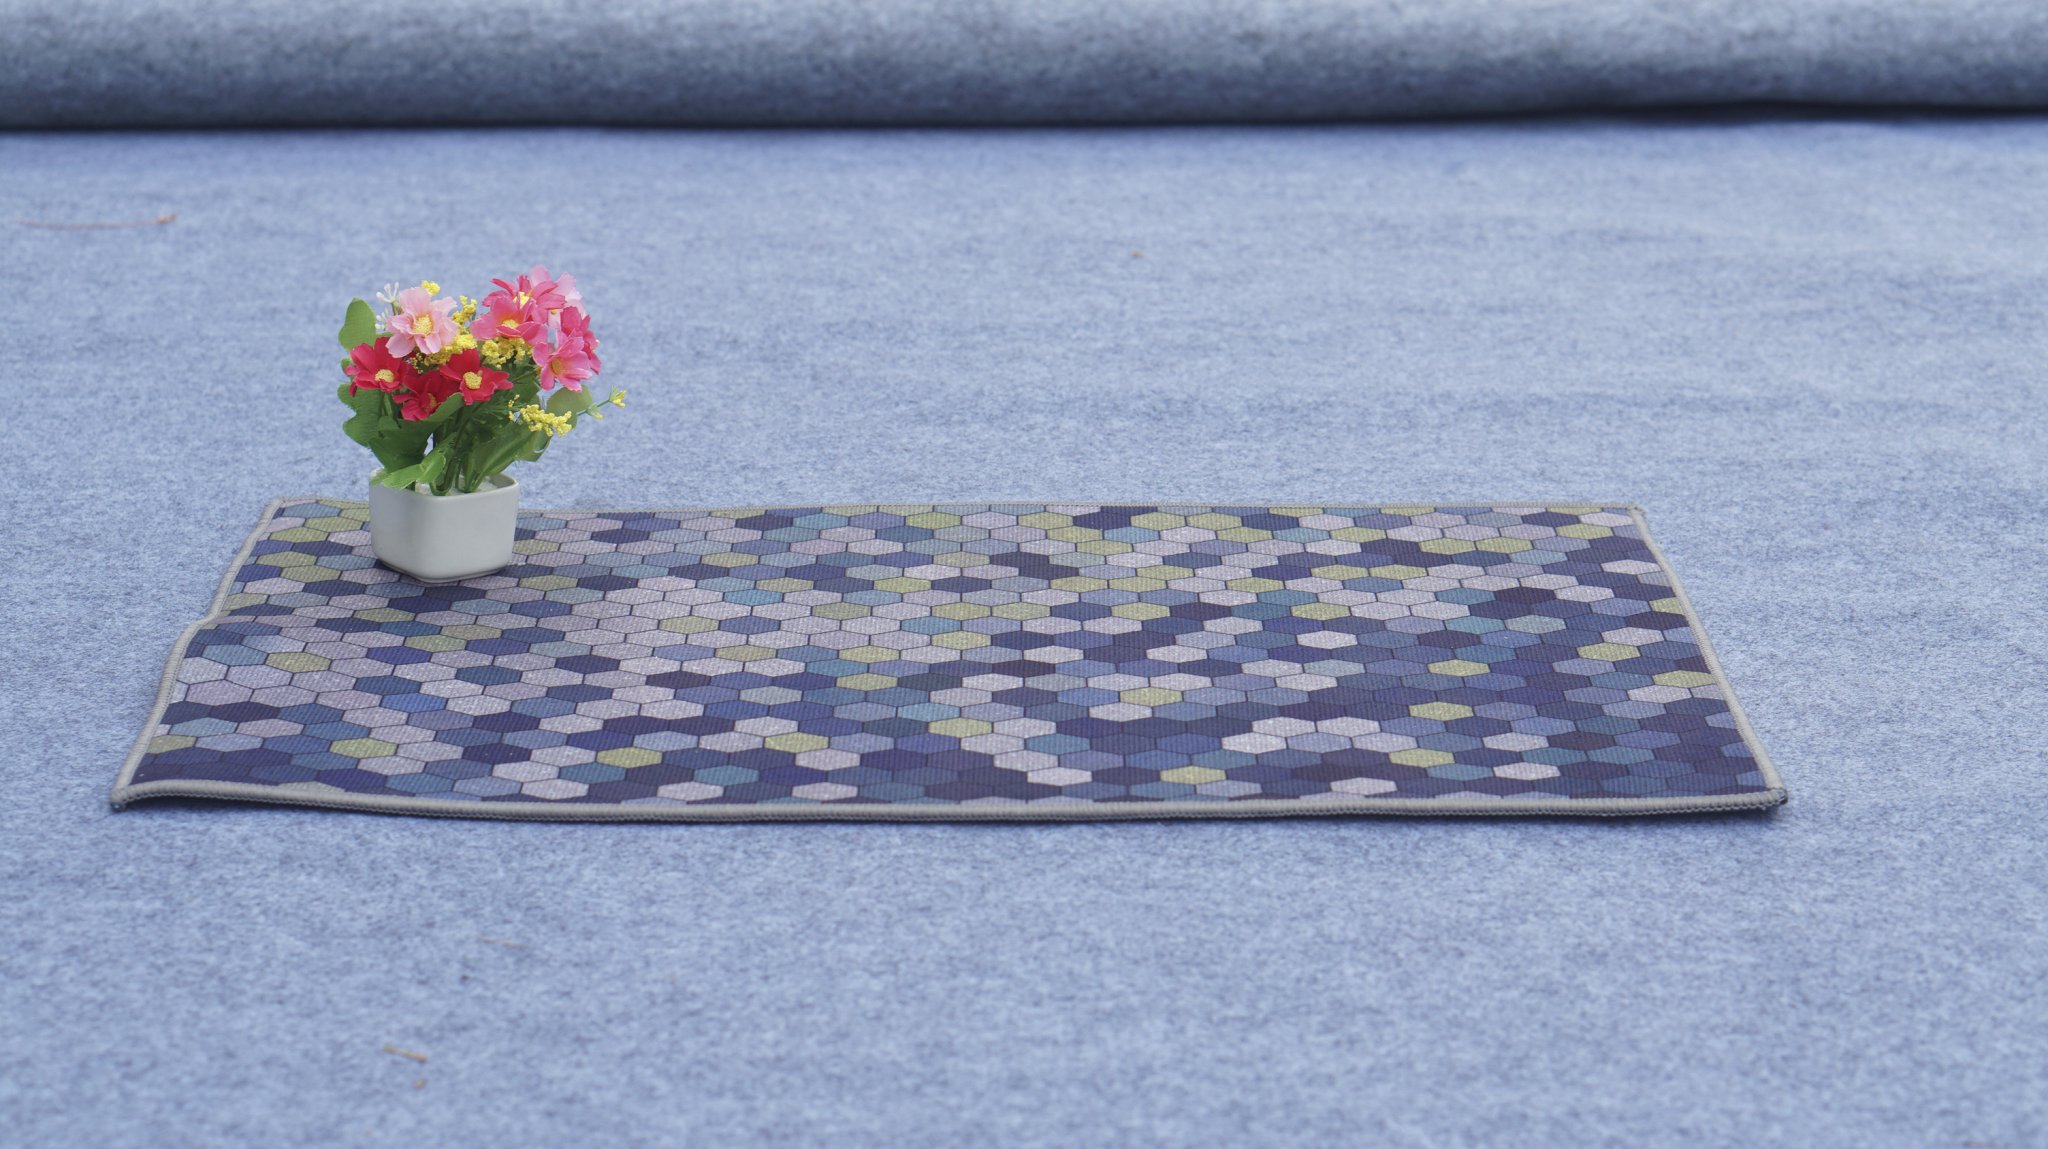 Combo 5 tấm thảm chùi chân 3D thấm hút, loại đẹp đủ họa tiết ngẫu nhiên, giúp không gian trở nên đẹp hơn